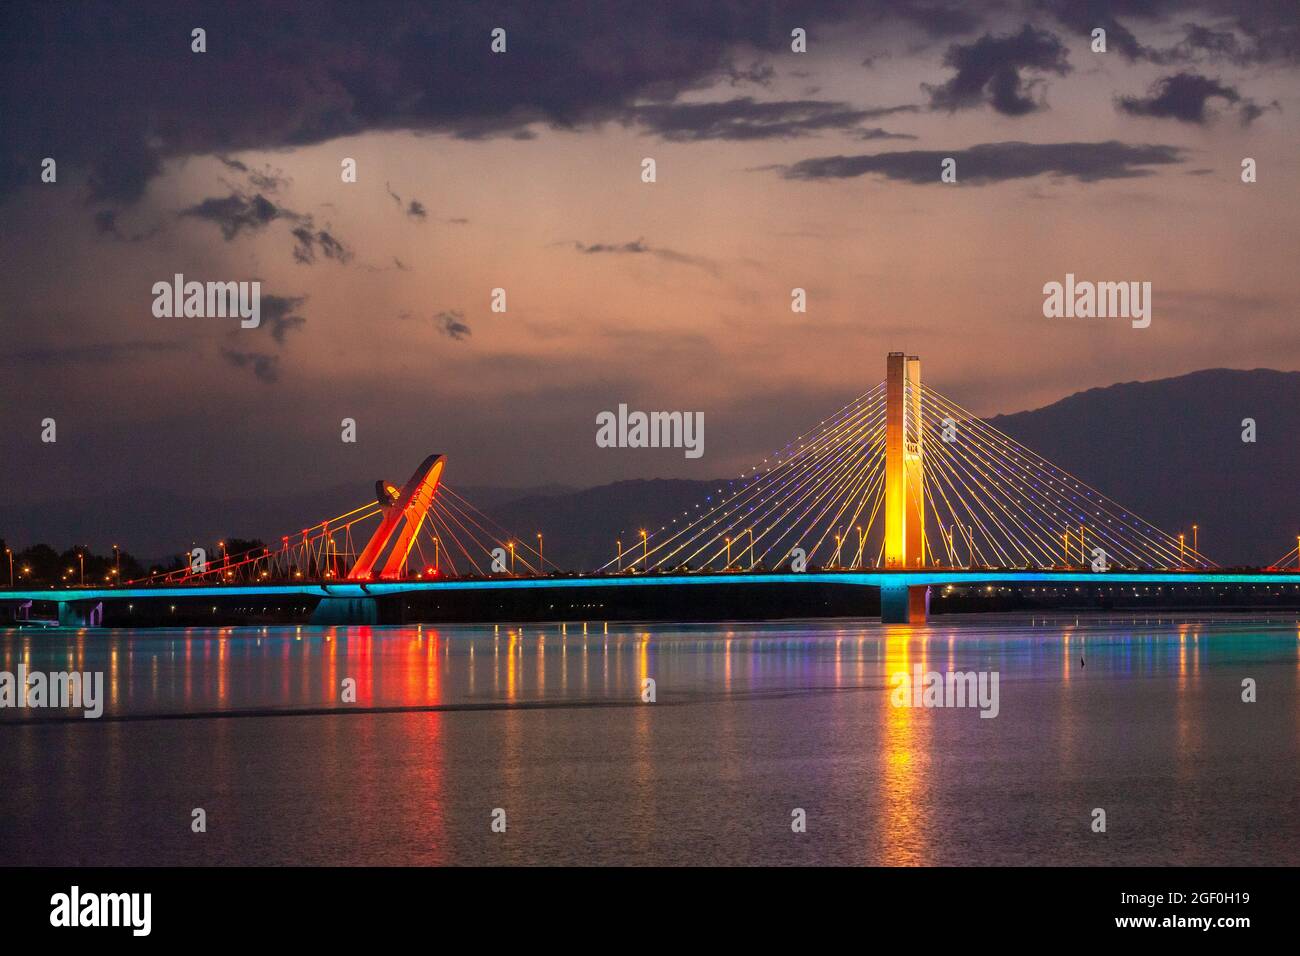 Hanzhong city in shaanxi hanjiang river bridge at night Stock Photo